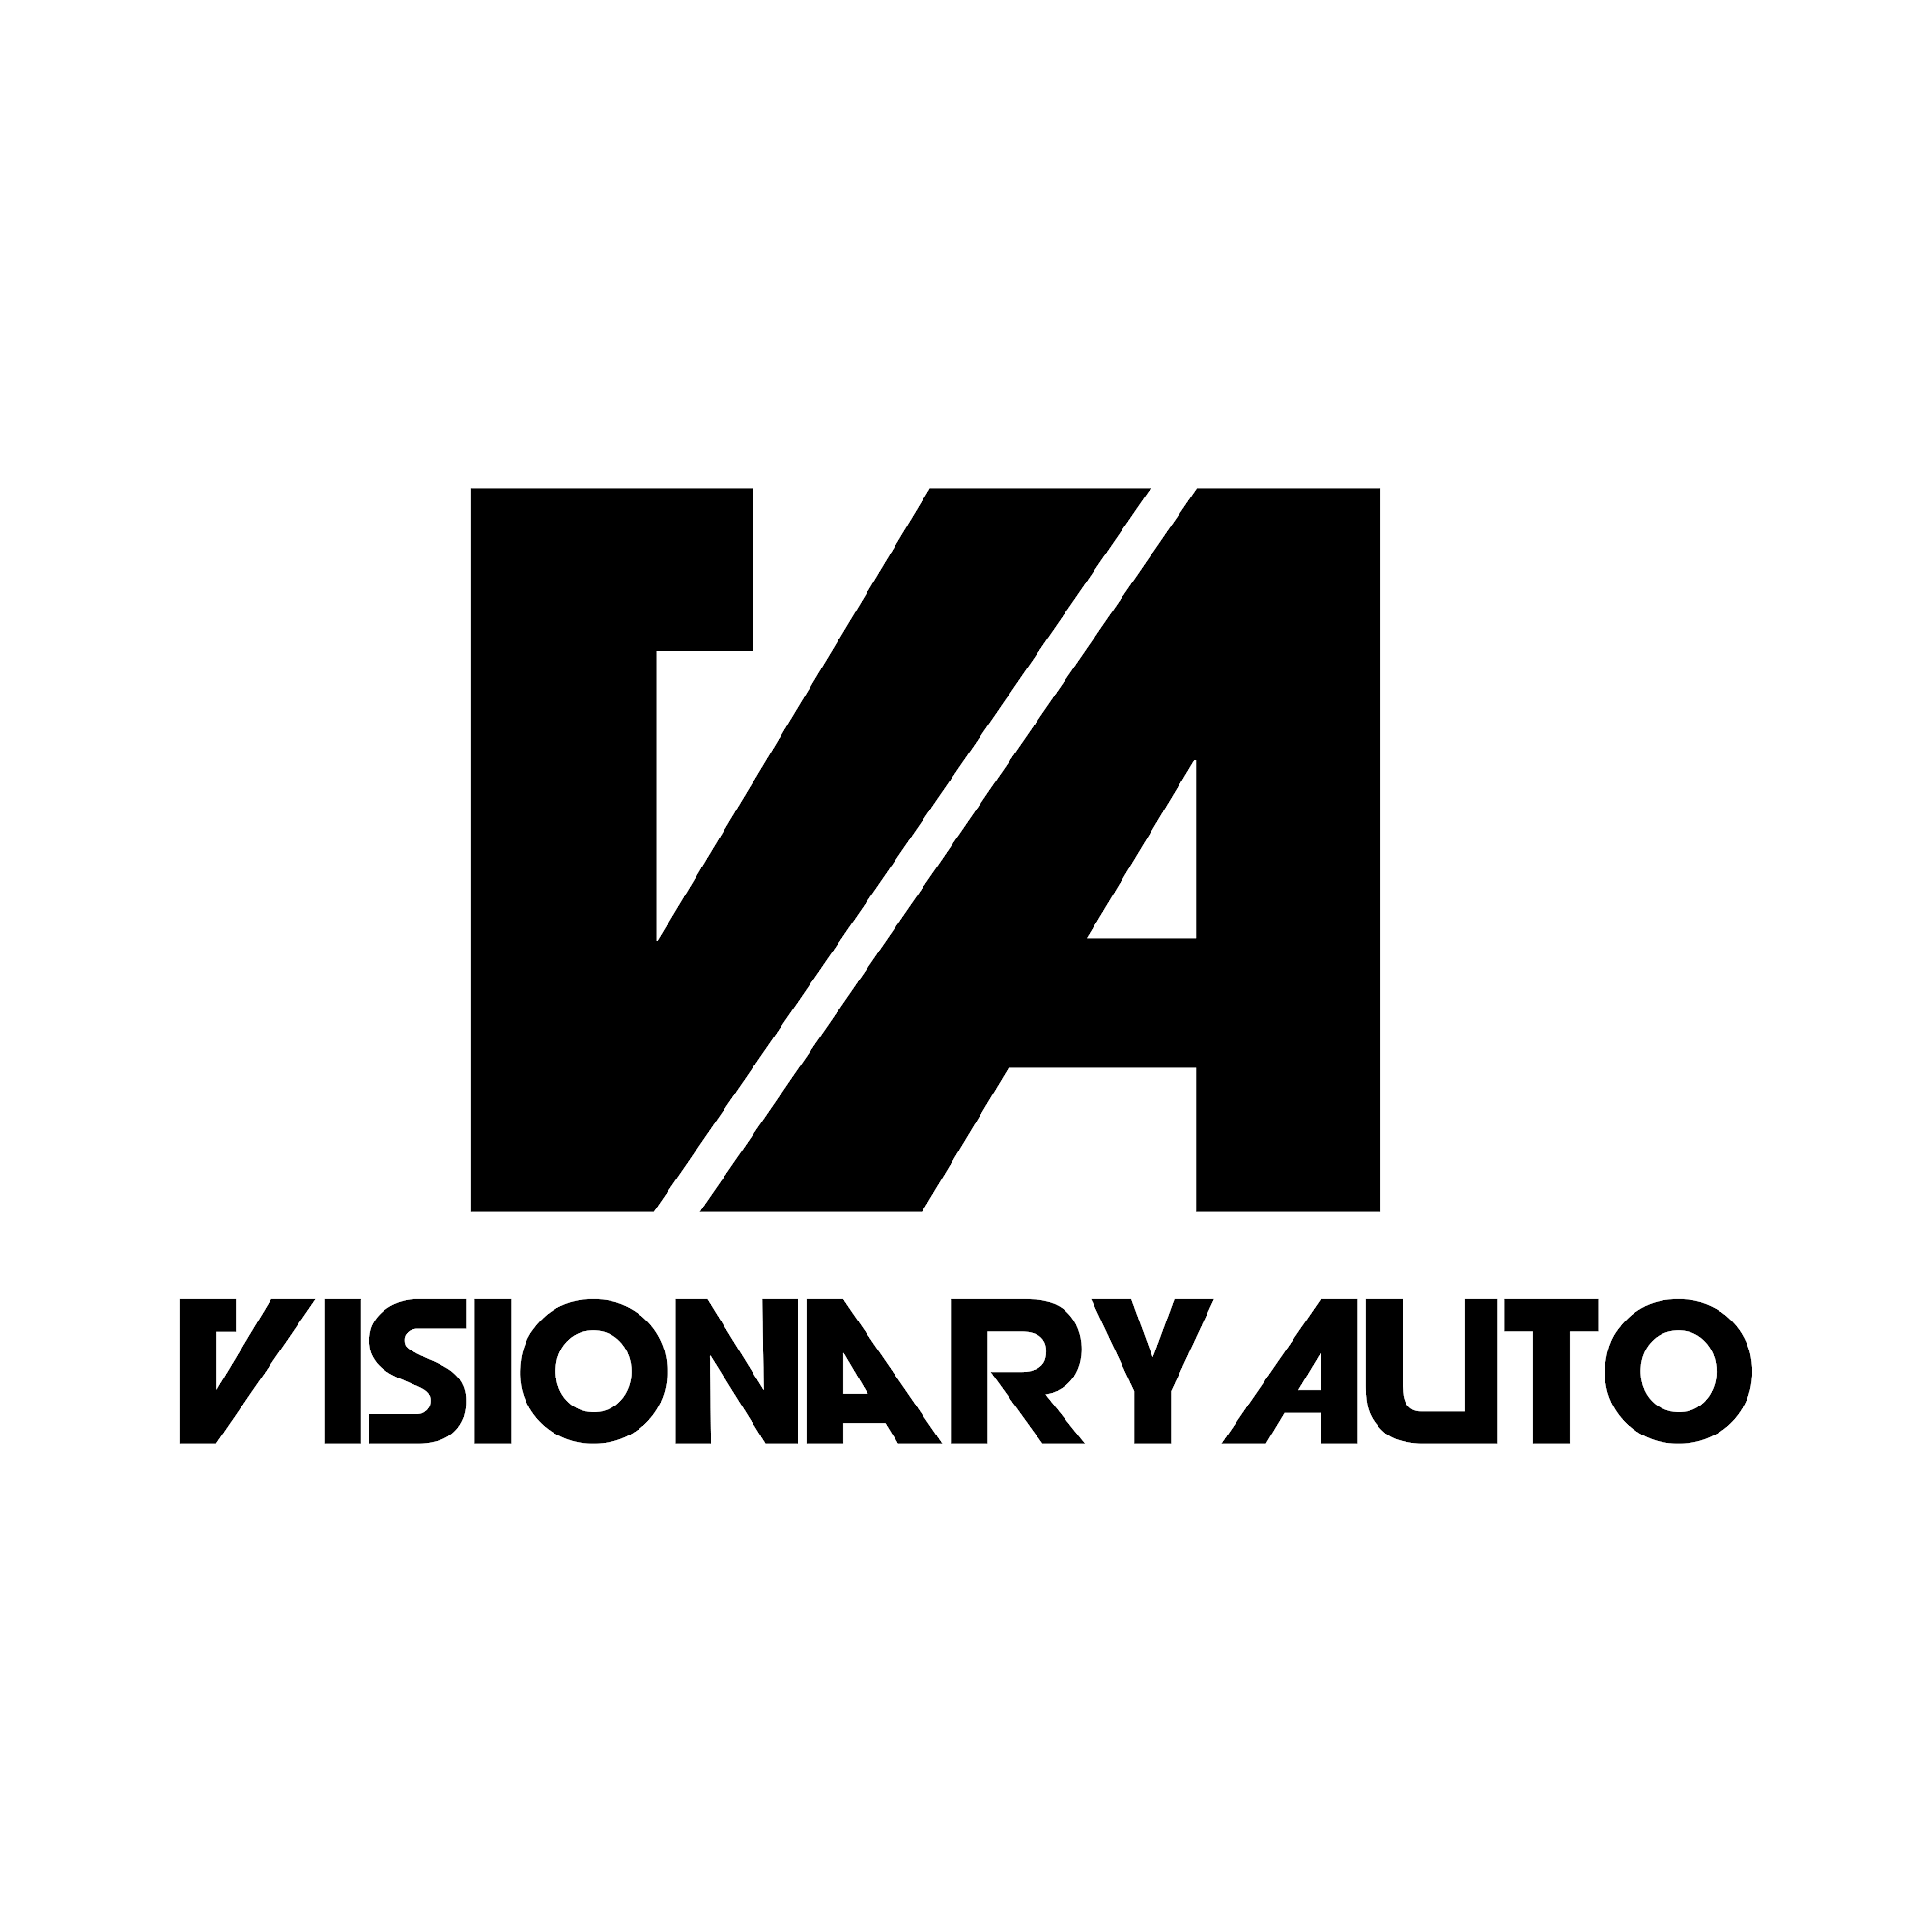 Visionary Auto Spa